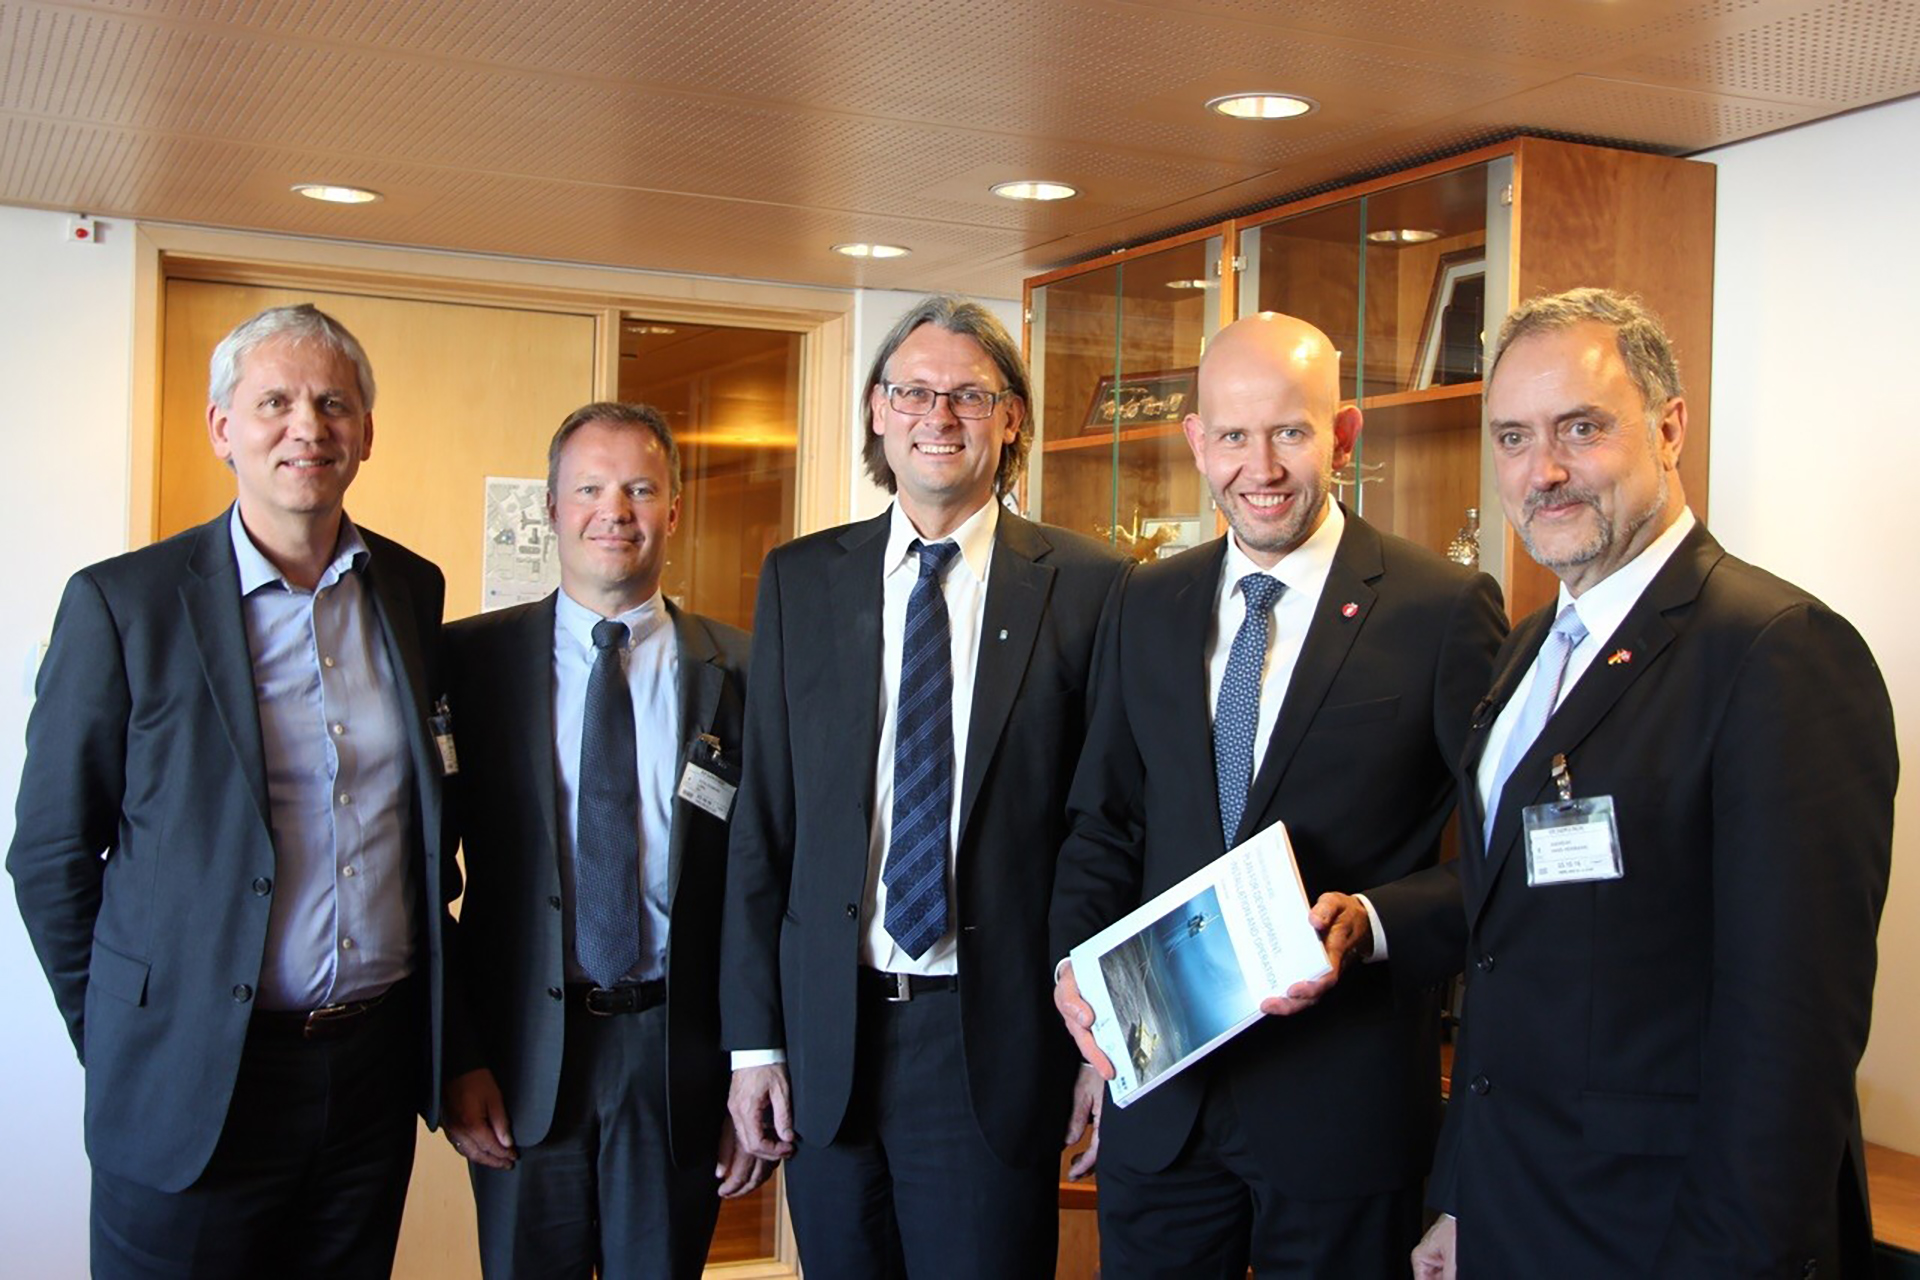 From left: Jon Sandnes, Lars Stoltenberg, Lars Moe, Tord Lien, Hans-Hermann Andreae. Photo: MPE